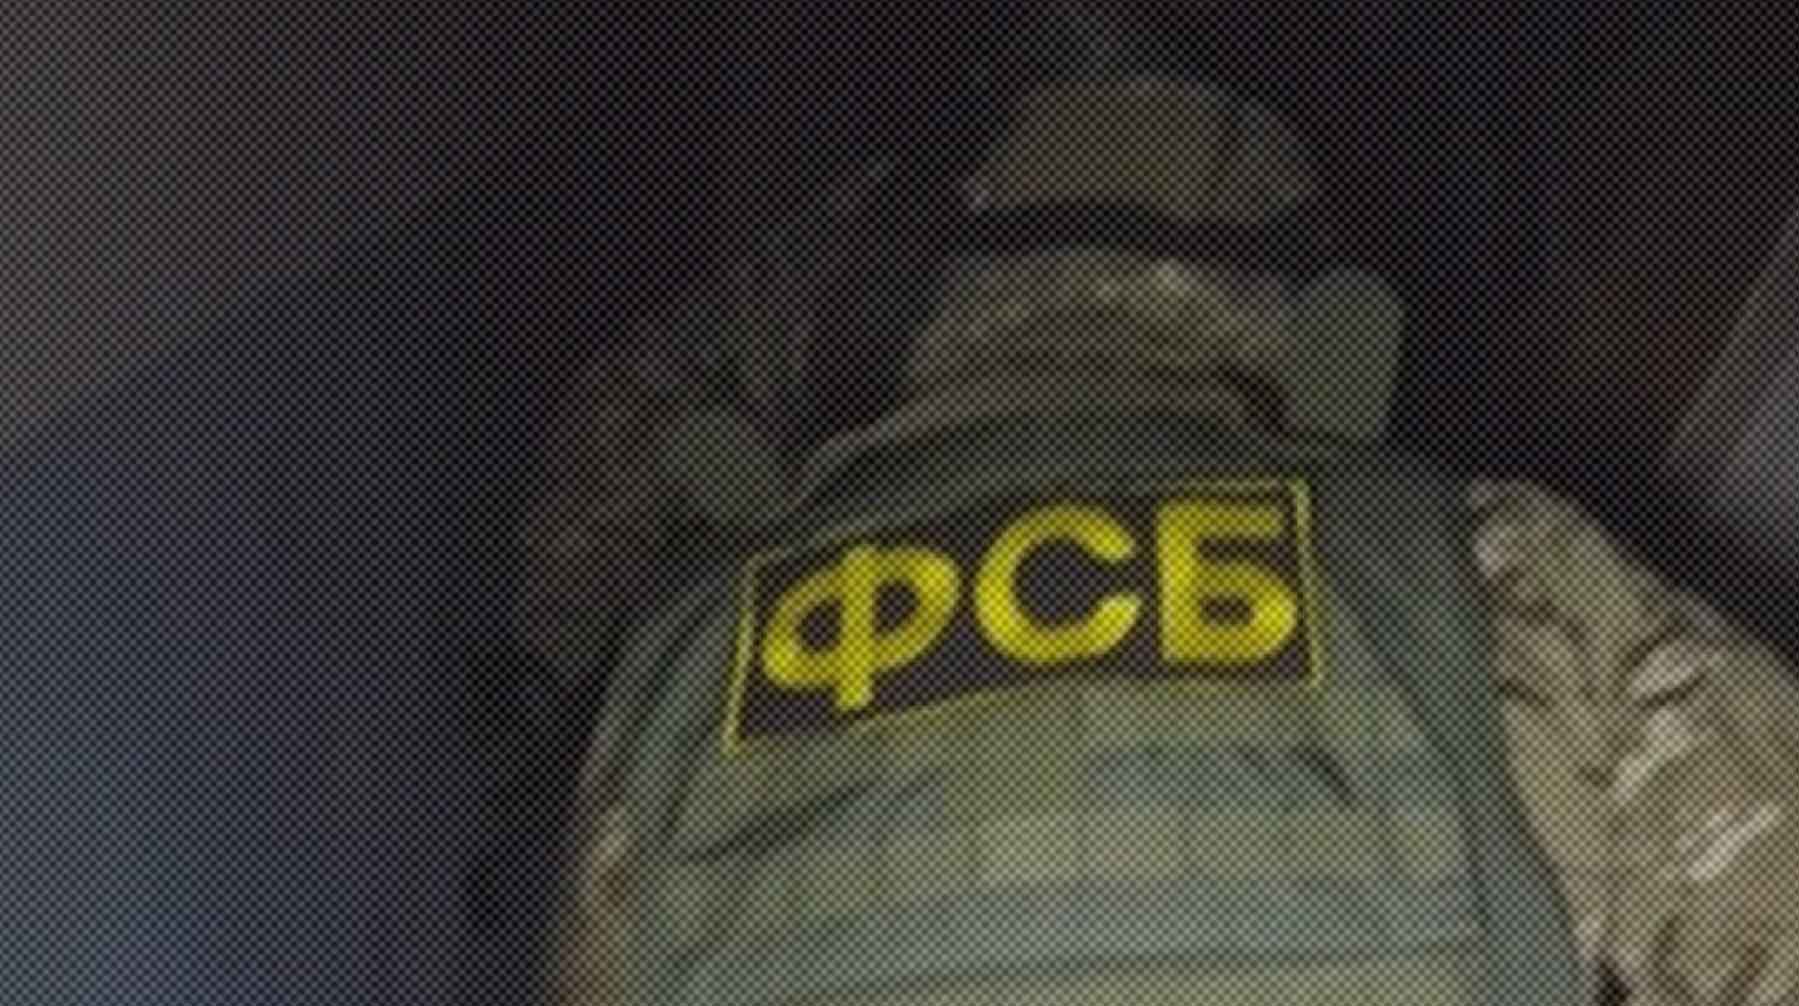 Dailystorm - Собирал бомбу и помогал Вовк с документами: ФСБ установила украинского соучастника убийства Дугиной